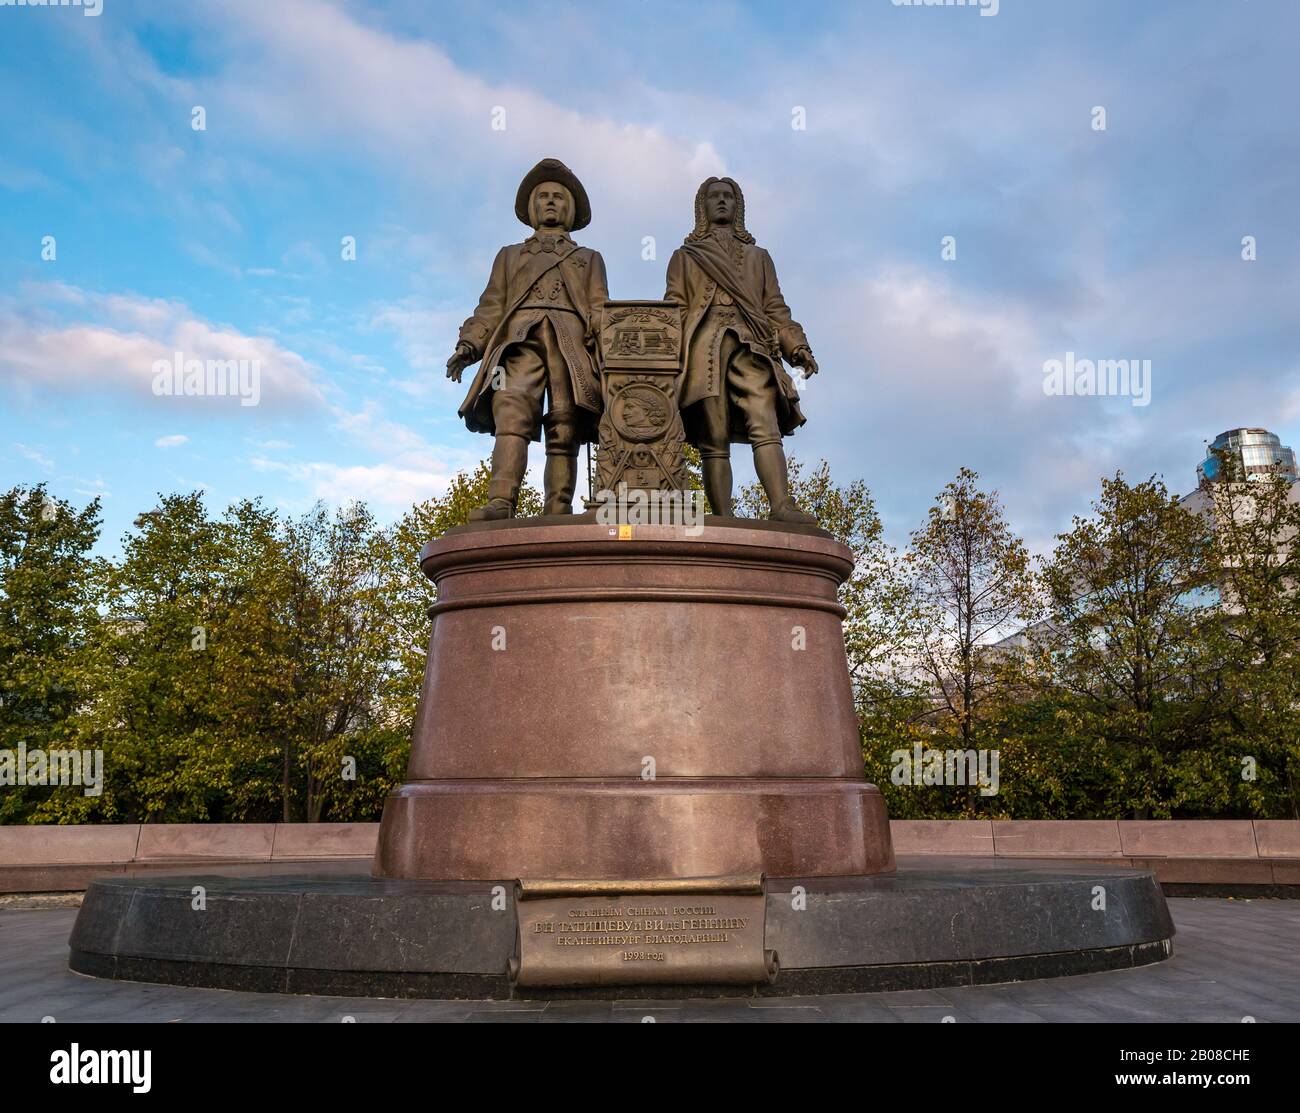 Bronze-Gedenkplastik an Stadtgründer, Vasily Tatischtschev & Vilim Gennin, Jekaterinburg, Sibirien, Russland Stockfoto